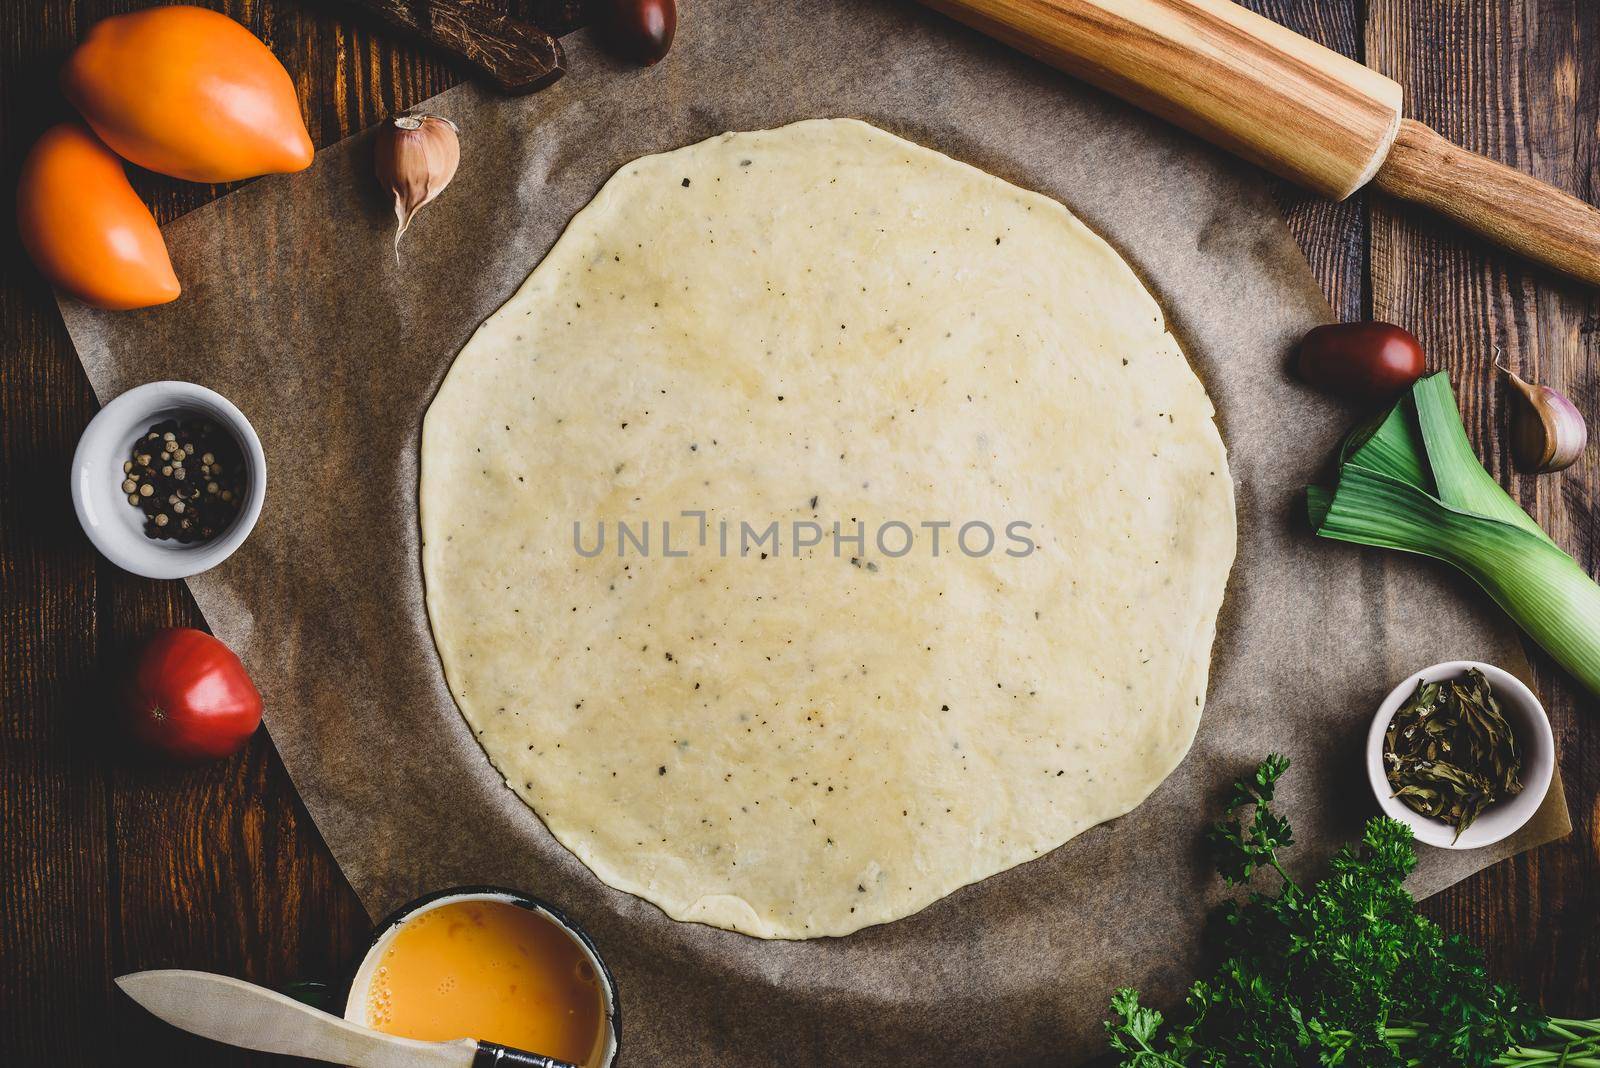 Rolled dough for galette by Seva_blsv